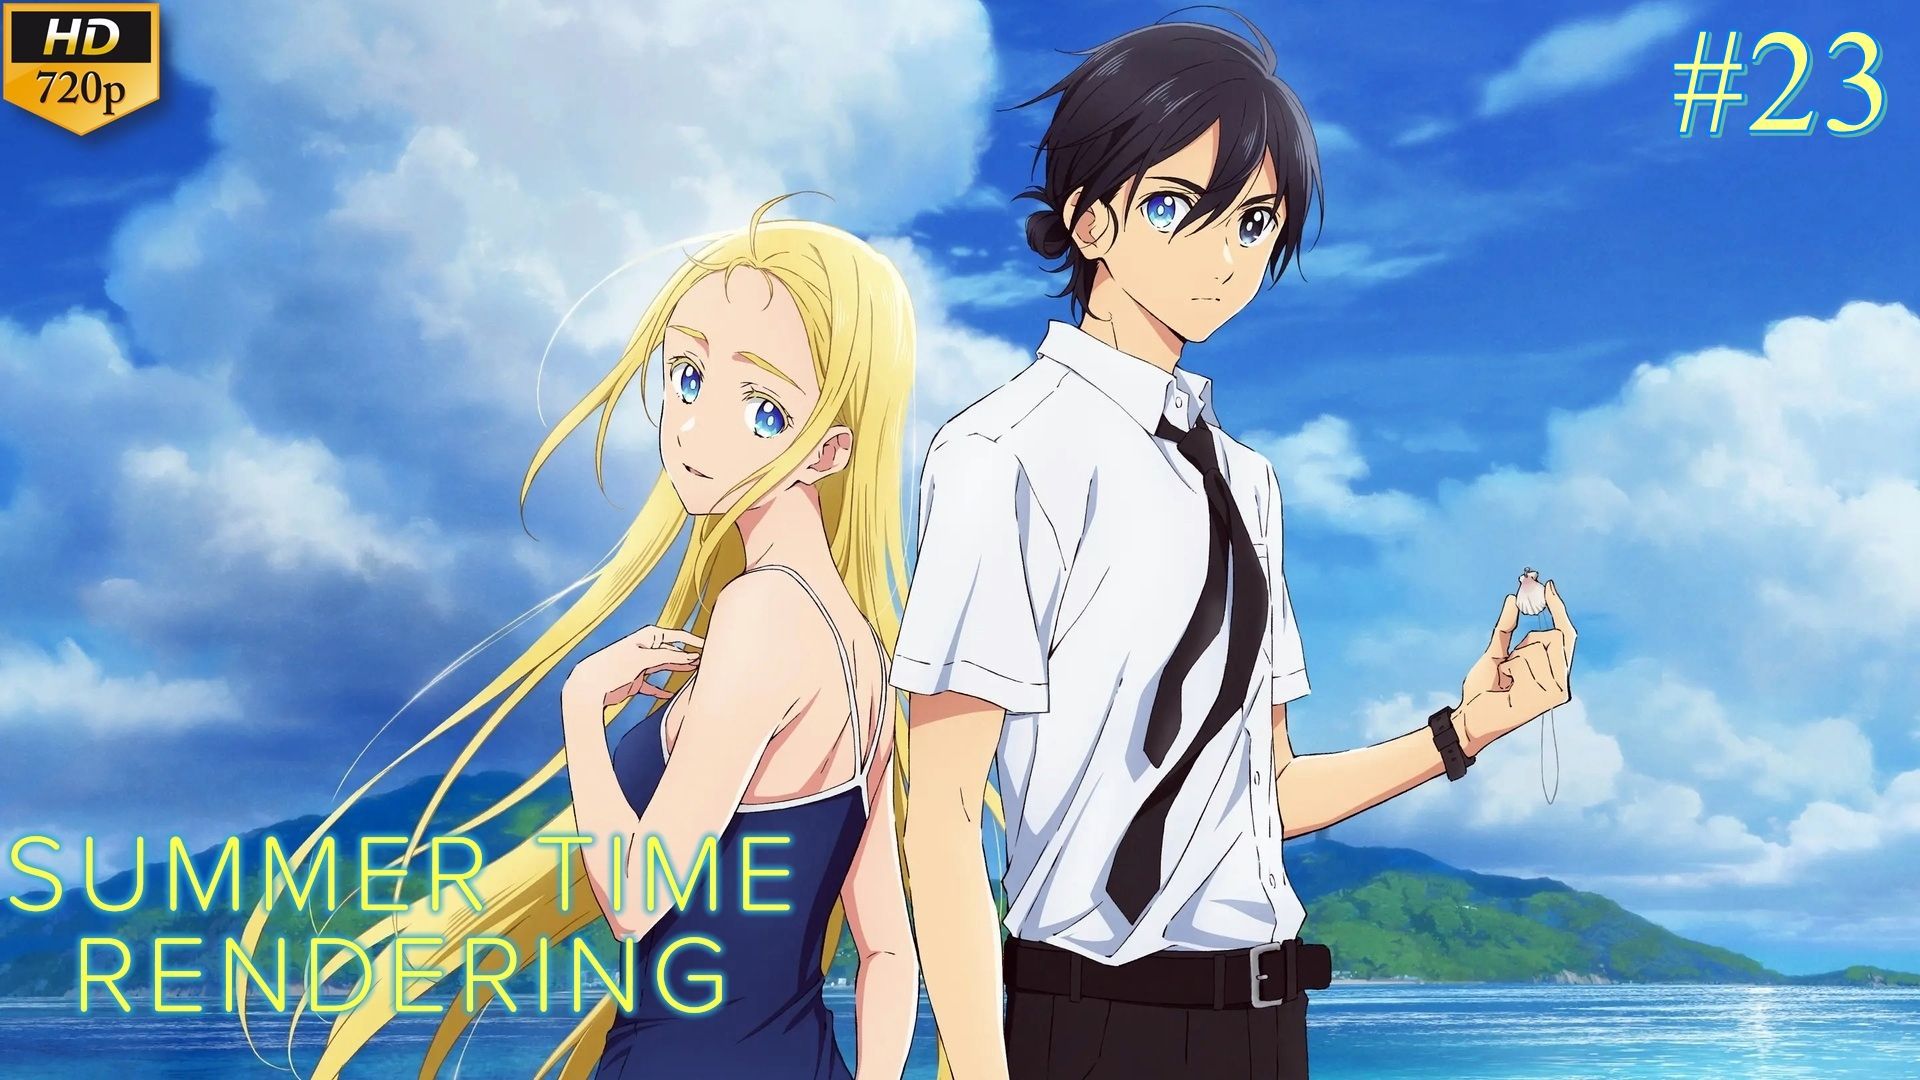 Anime Summertime Render Episode 23 Sub Indo: Link Nonton, Jadwal